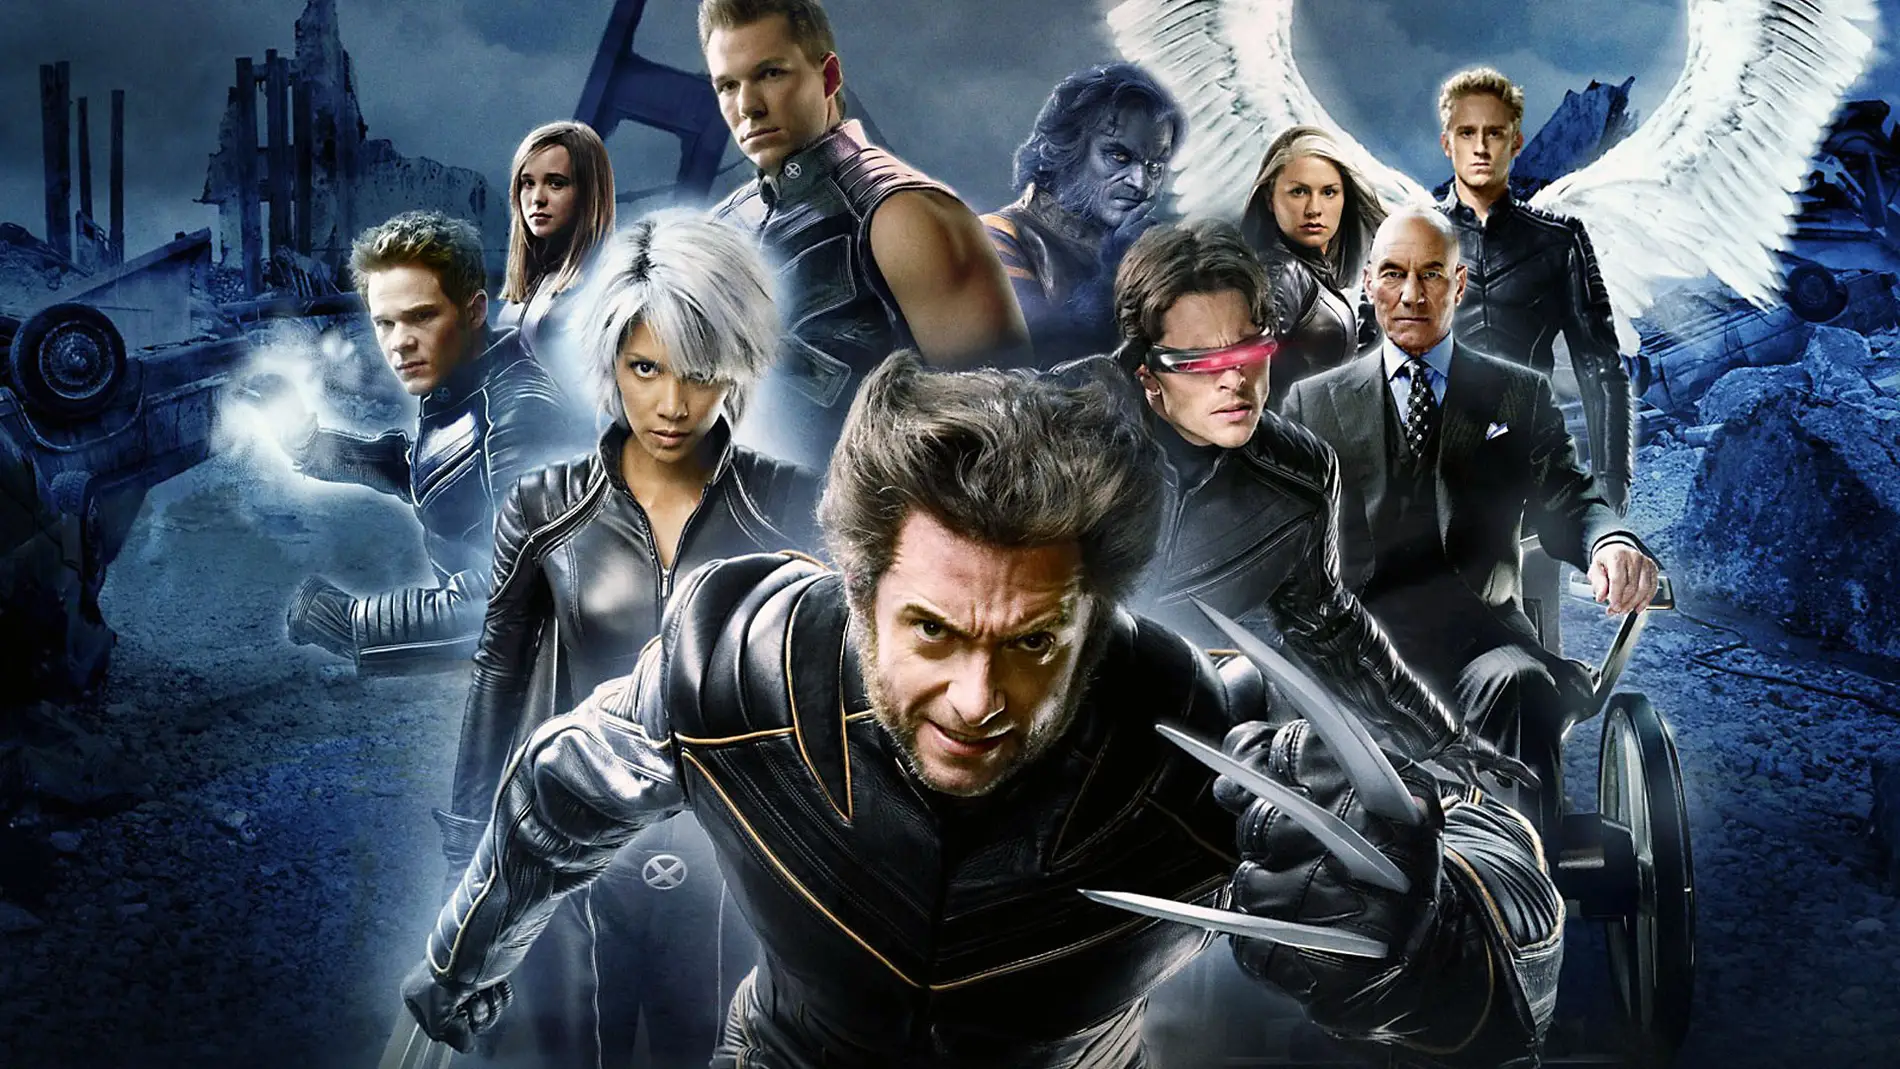 La versión cinematográfica de los X-Men